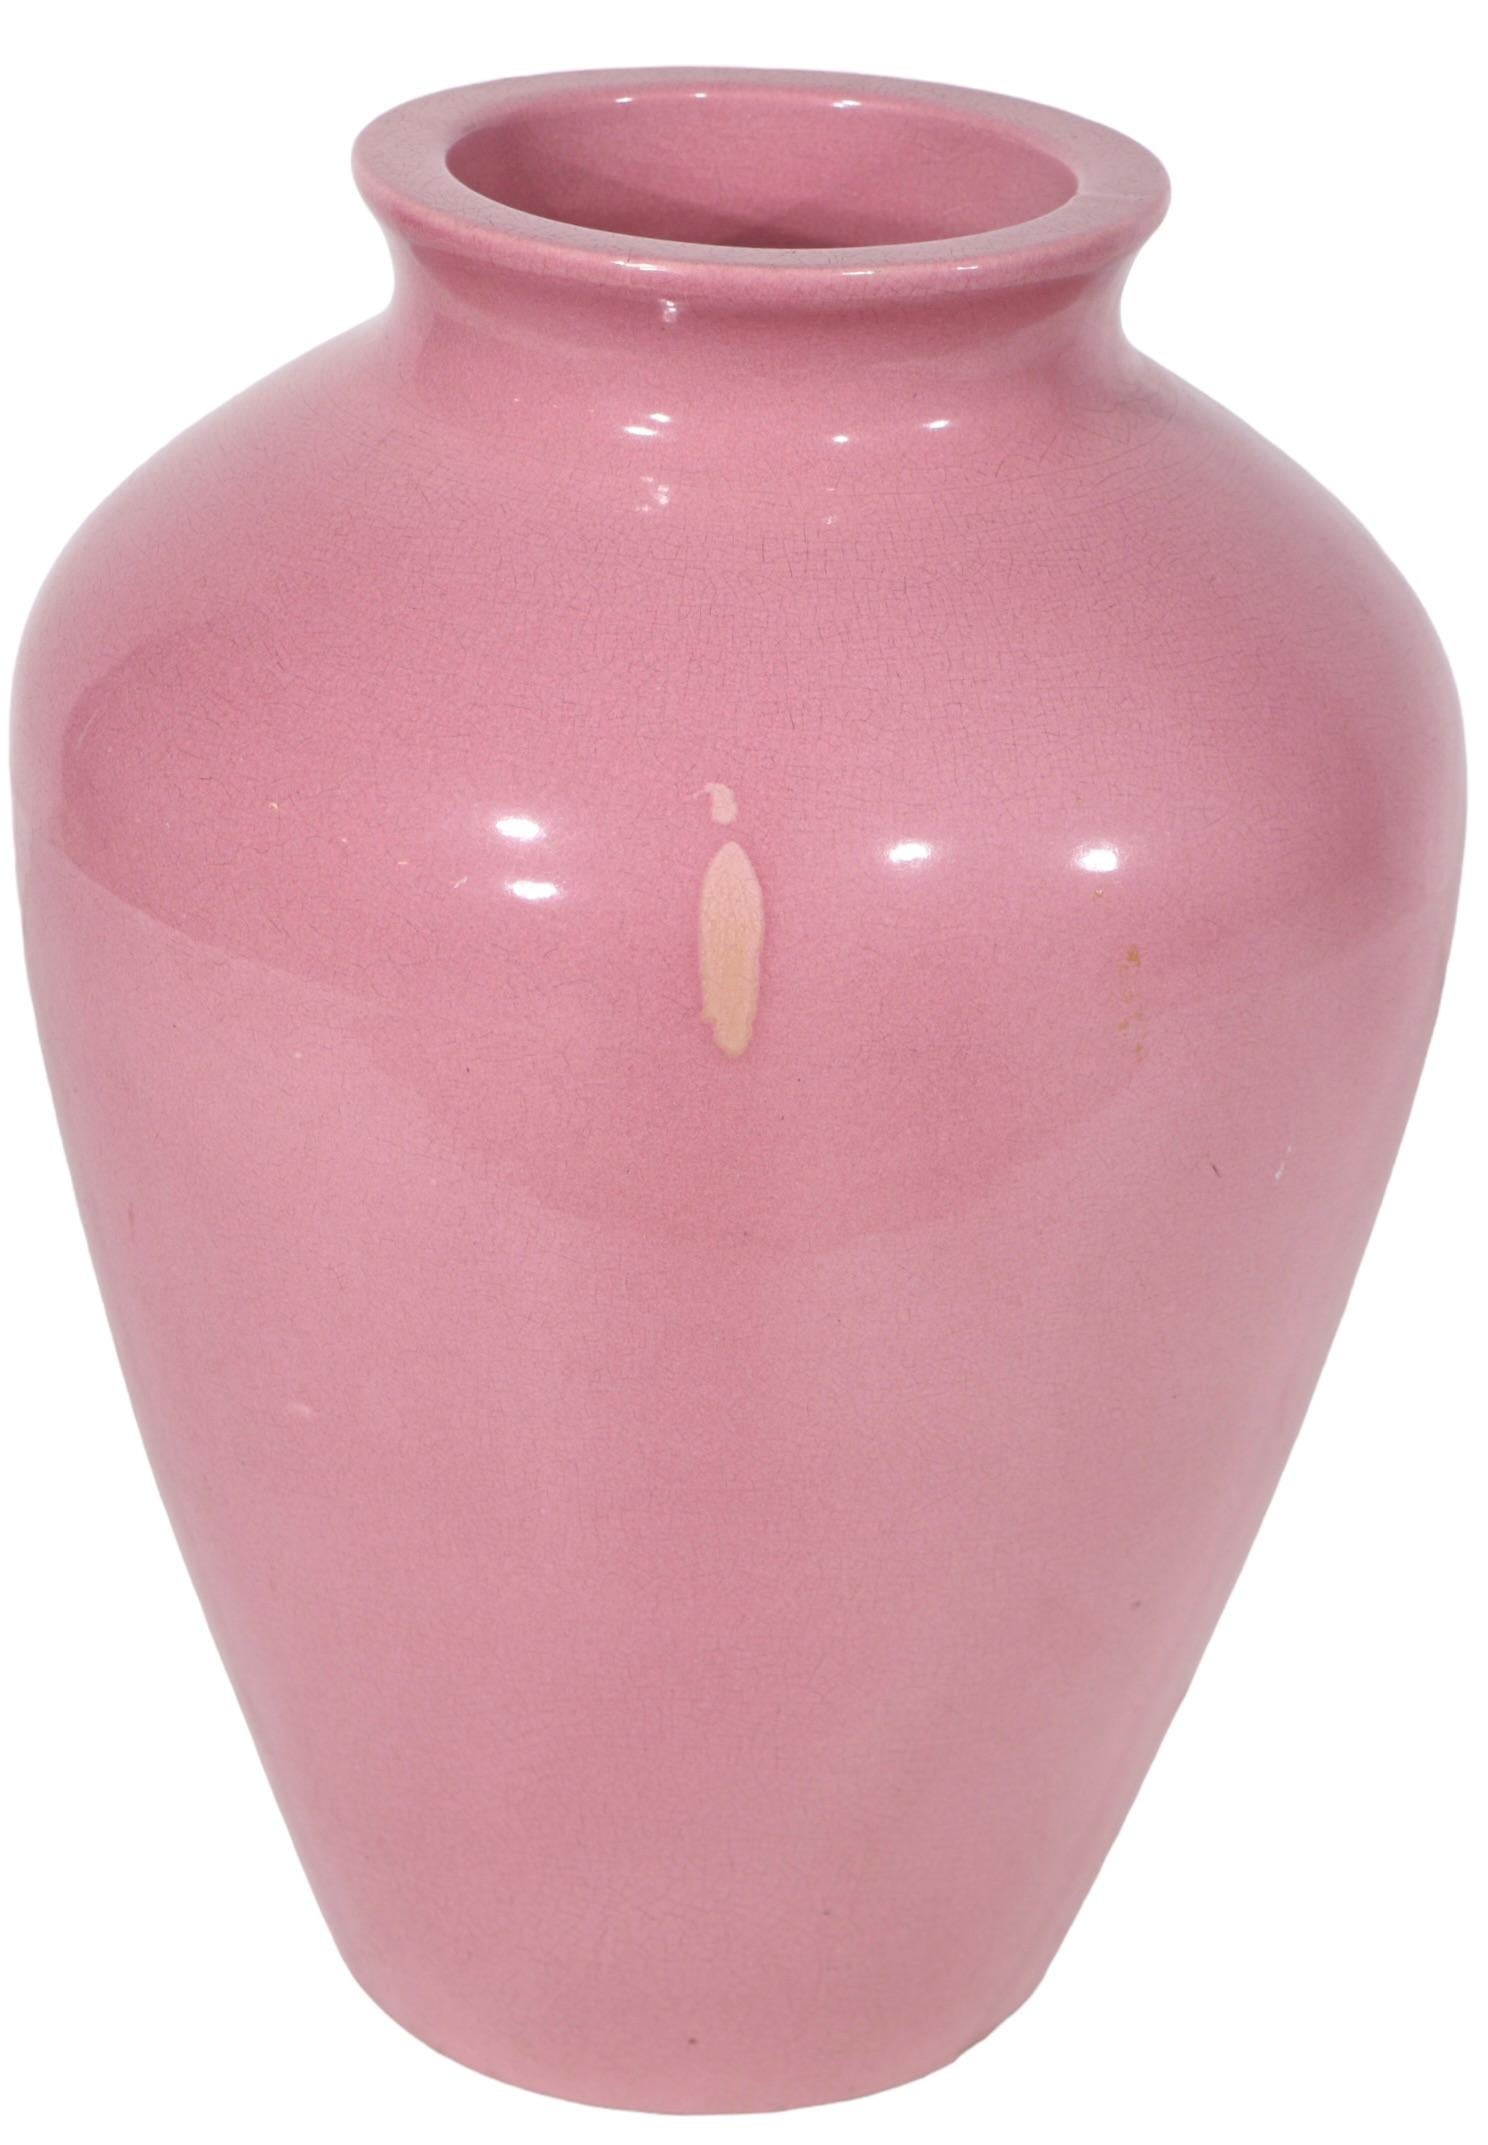 American Vintage Arts and Crafts  Art Deco  Sand Jar - Dusky Pink Glaze For Sale